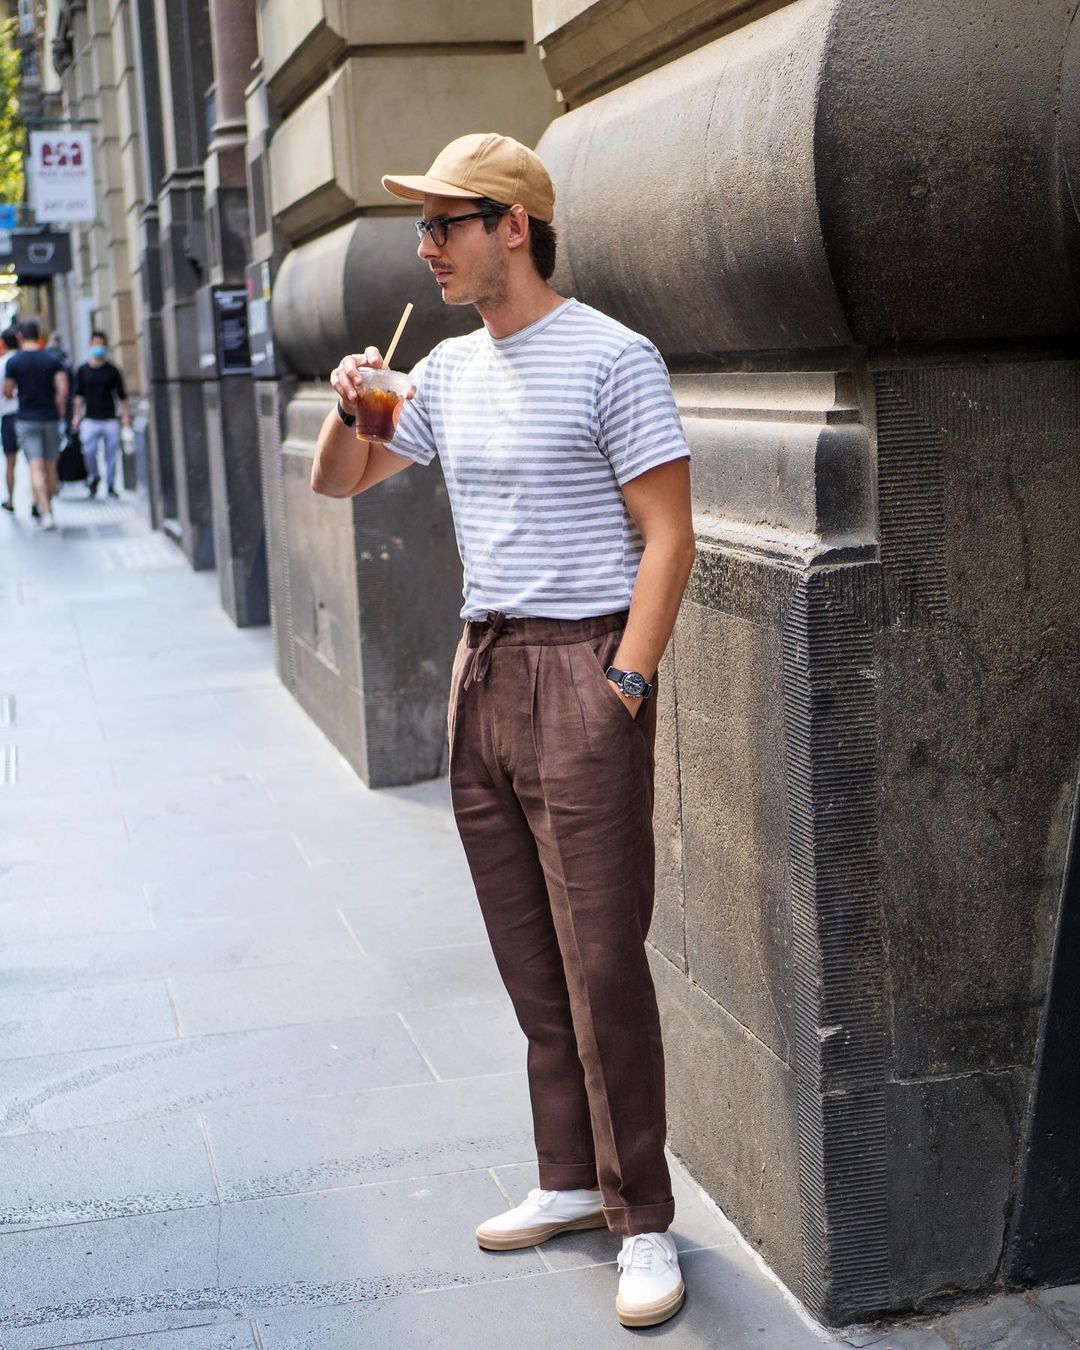 Men's City Linen Trousers